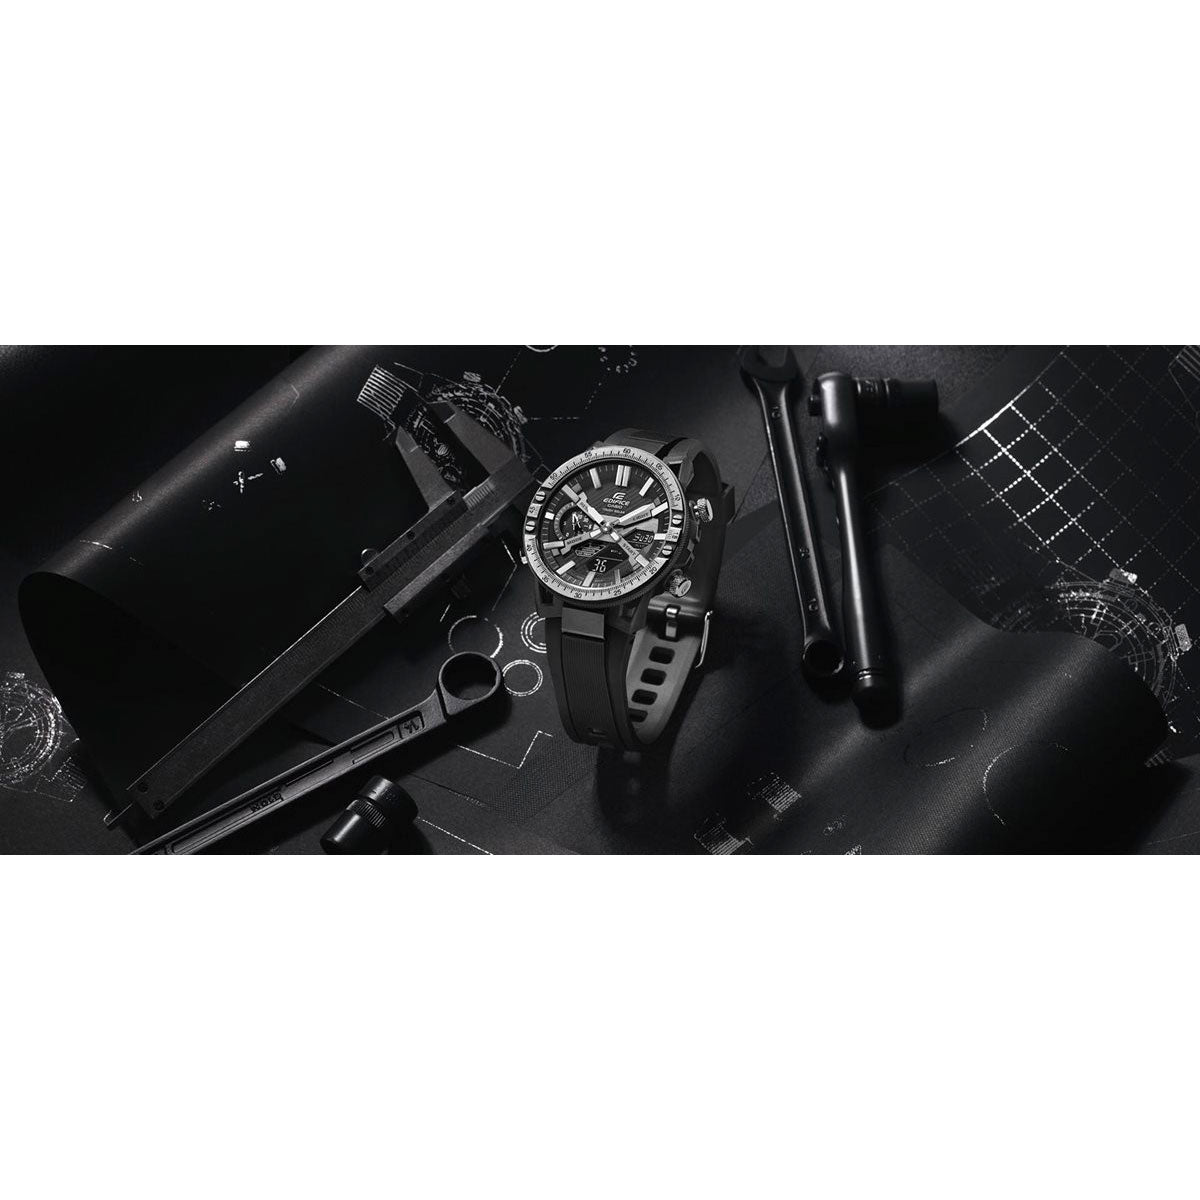 カシオ エディフィス CASIO EDIFICE ソーラー 腕時計 メンズ タフソーラー クロノグラフ ECB-2000YTP-1AJF メカニックツールデザイン スマートフォンリンク